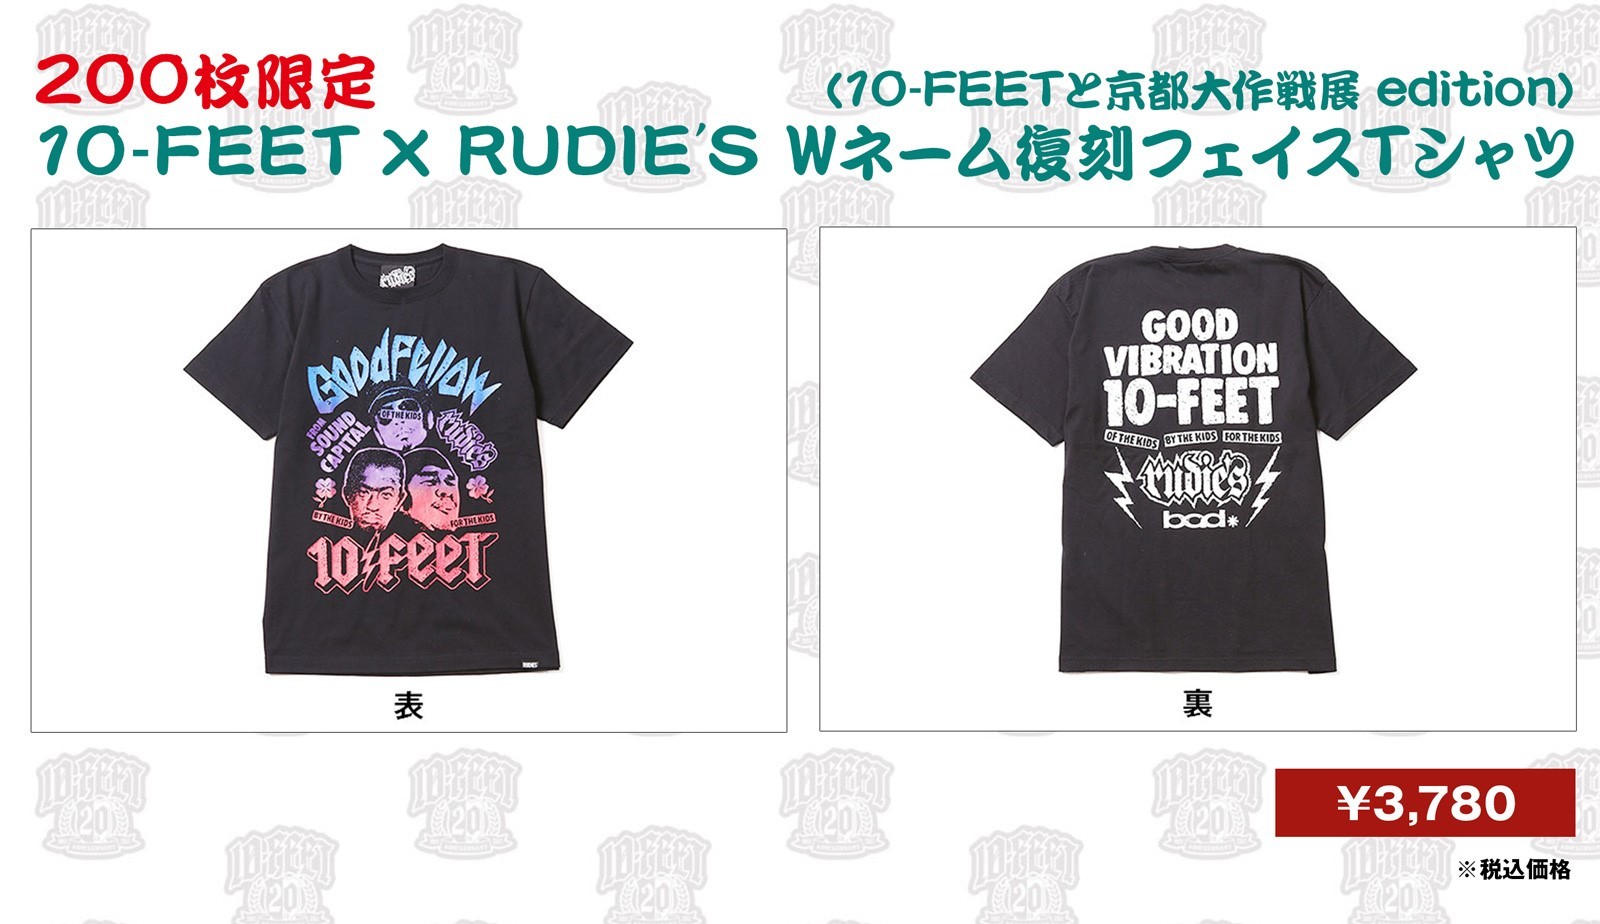 10-FEET × RUDIE'S Wネーム復刻フェイスTシャツ